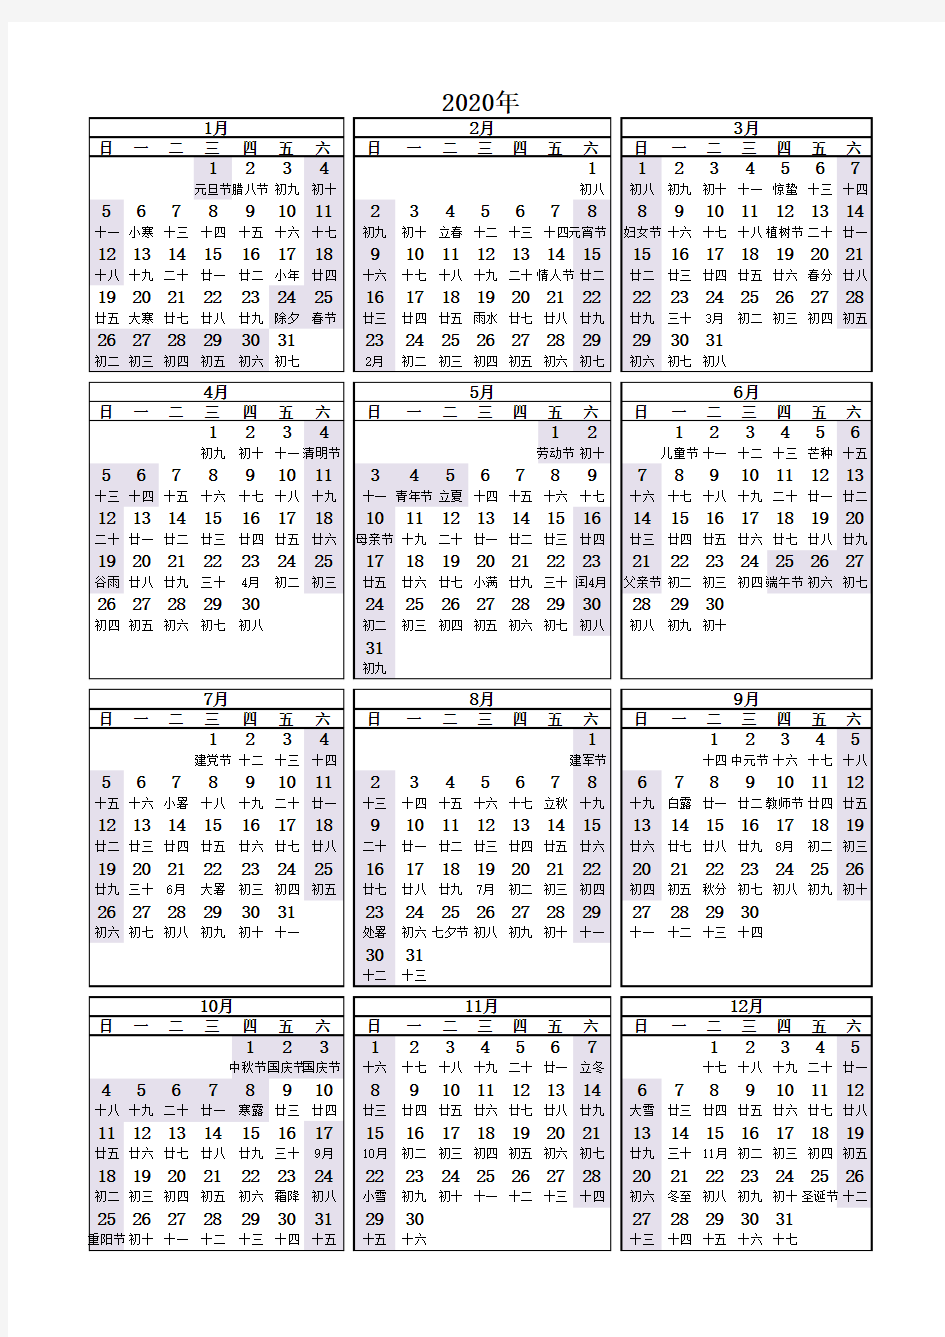 2020年日历(包含法定节假日及调休,可直接打印)